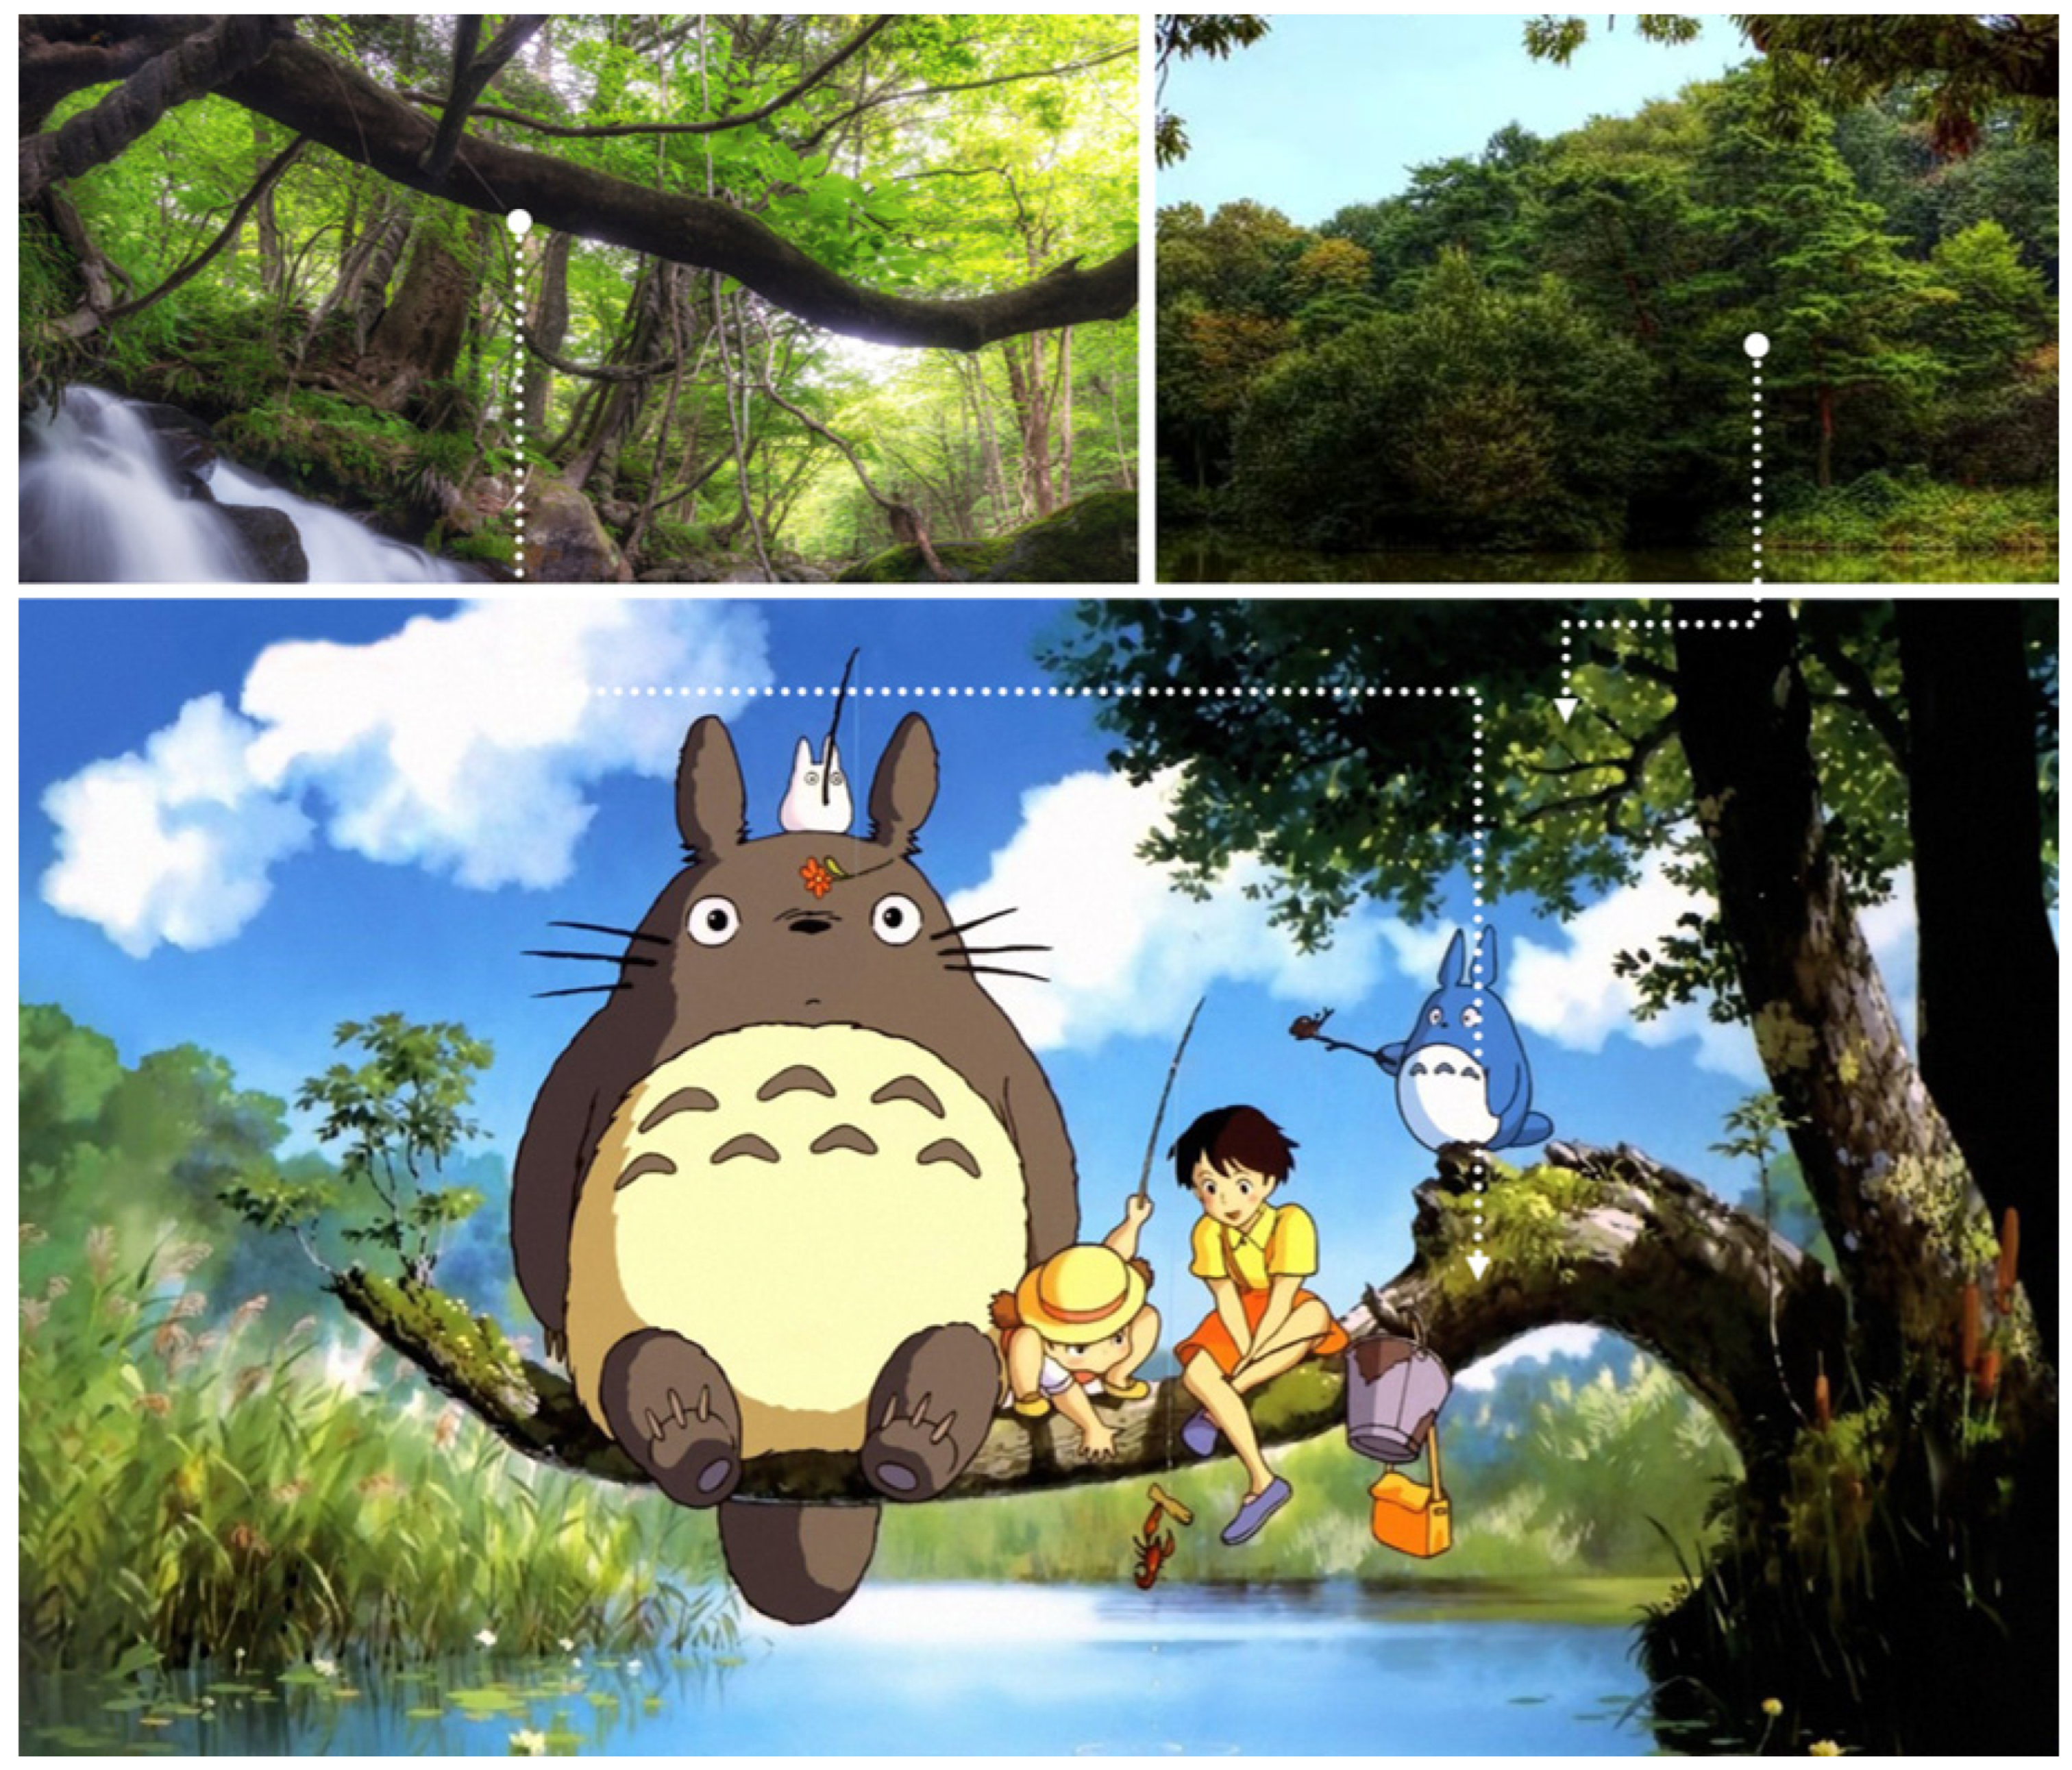 Studio Ghibli - The Beautiful Environmentalism